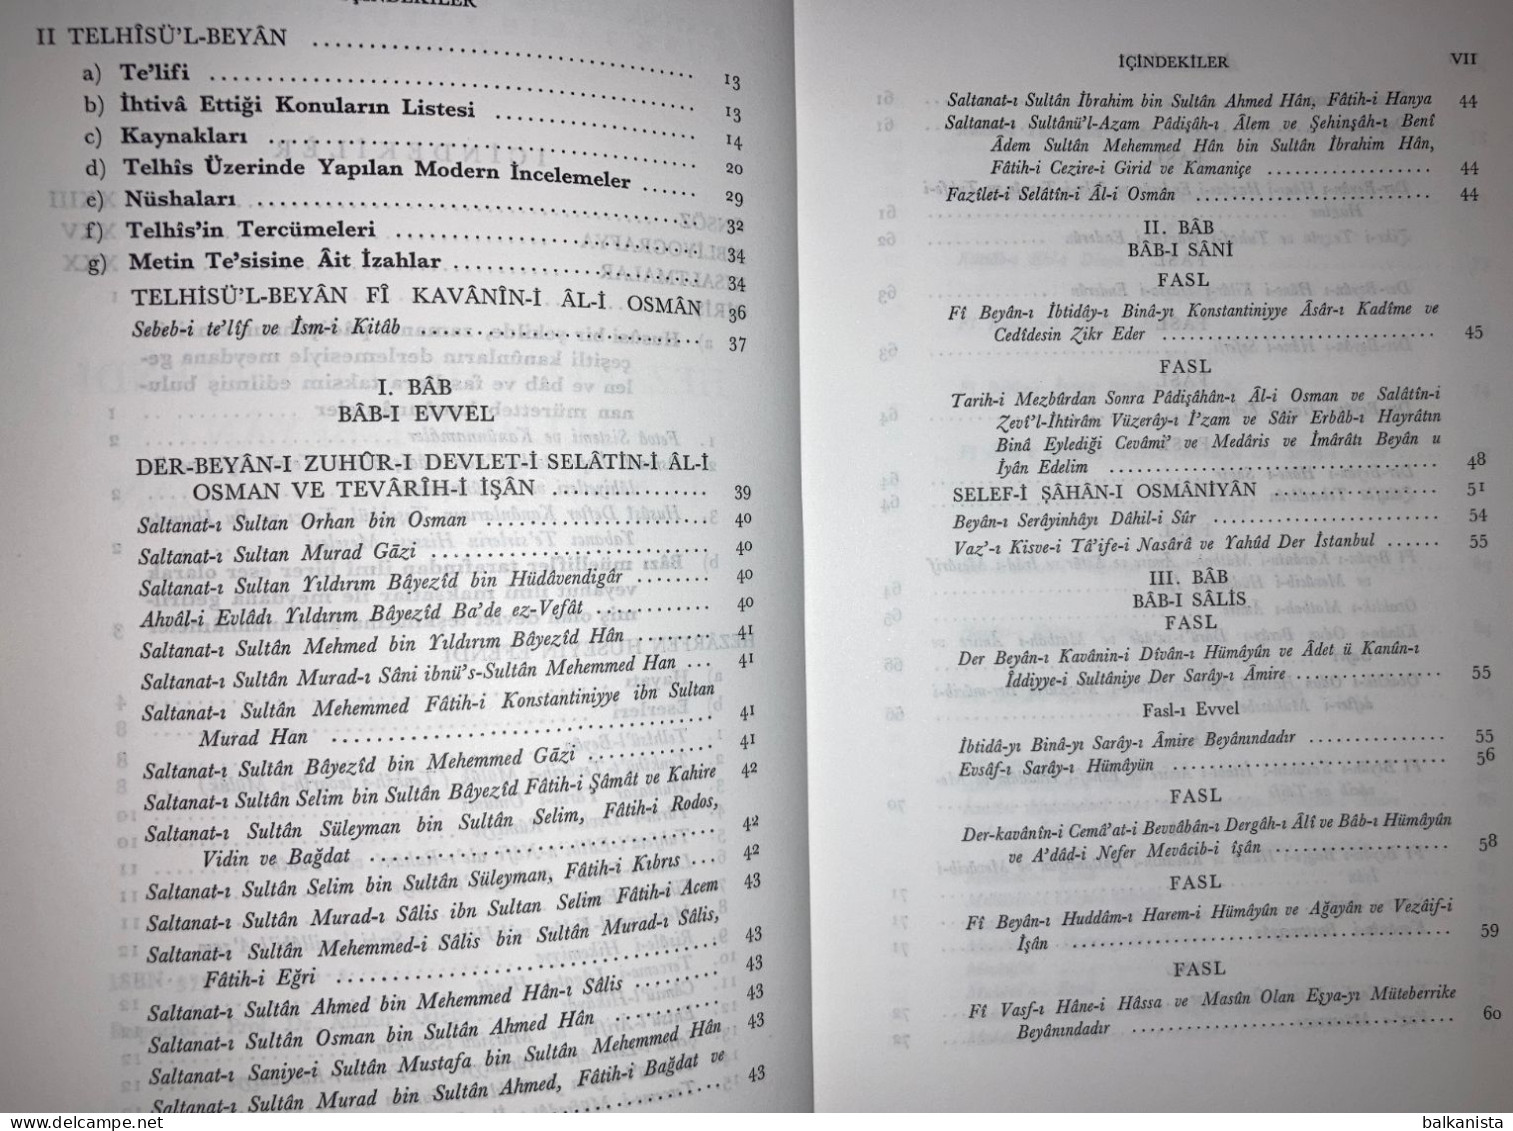 Telhisu'l Beyan Fi Kavanin-i Al-i Osman Ottoman Turkish History - Medio Oriente